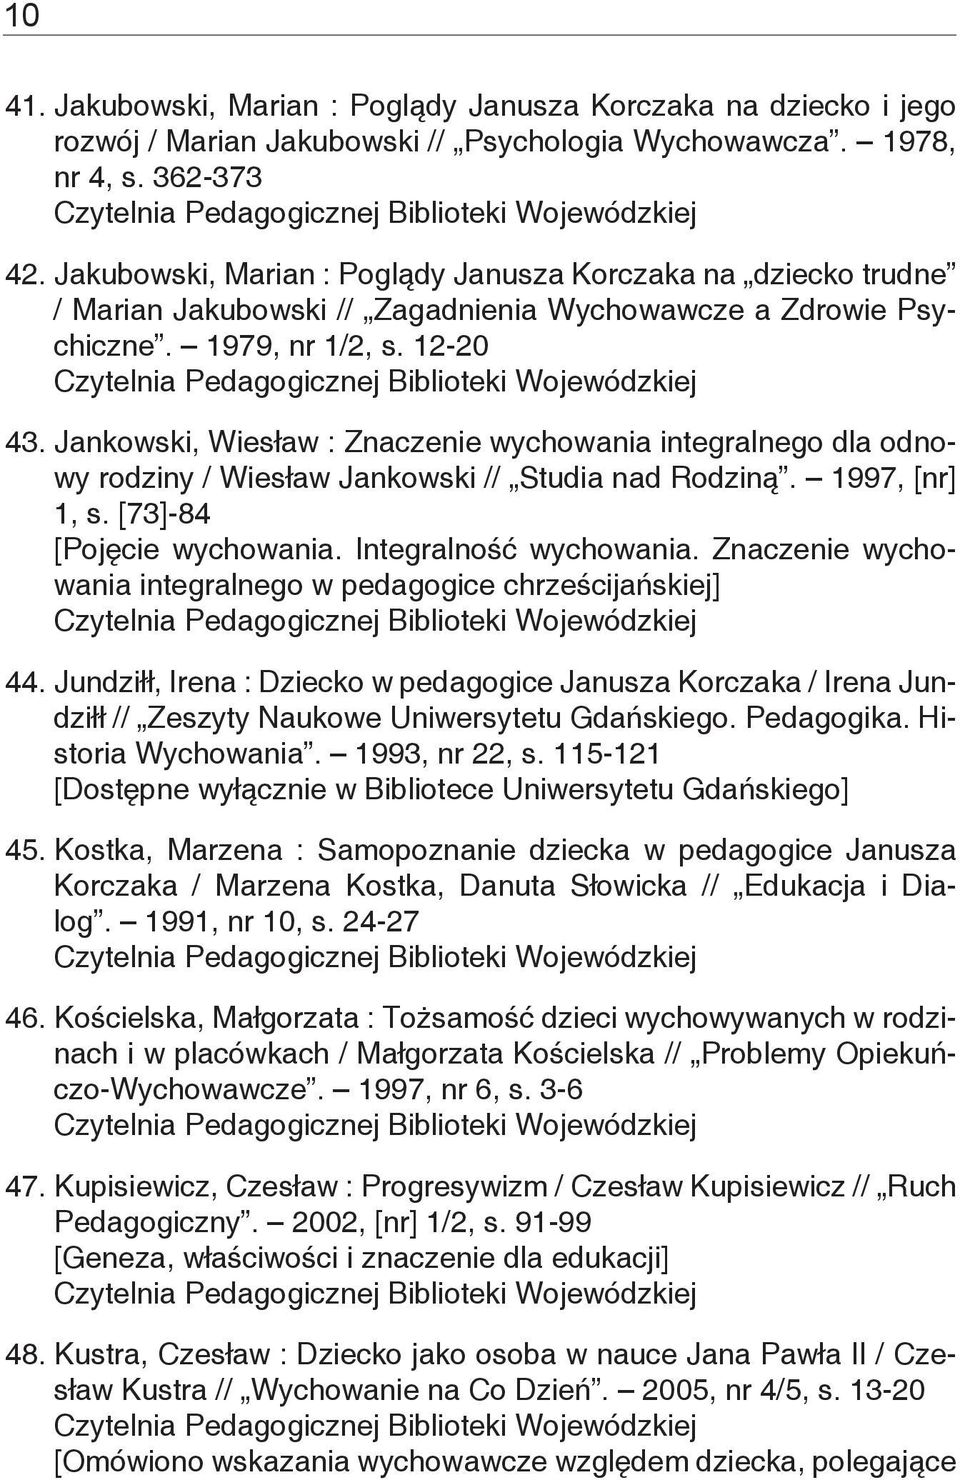 Jankowski, Wiesław : Znaczenie wychowania integralnego dla odnowy rodziny / Wiesław Jankowski // Studia nad Rodziną. 1997, [nr] 1, s. [73]-84 [Pojęcie wychowania. Integralność wychowania.